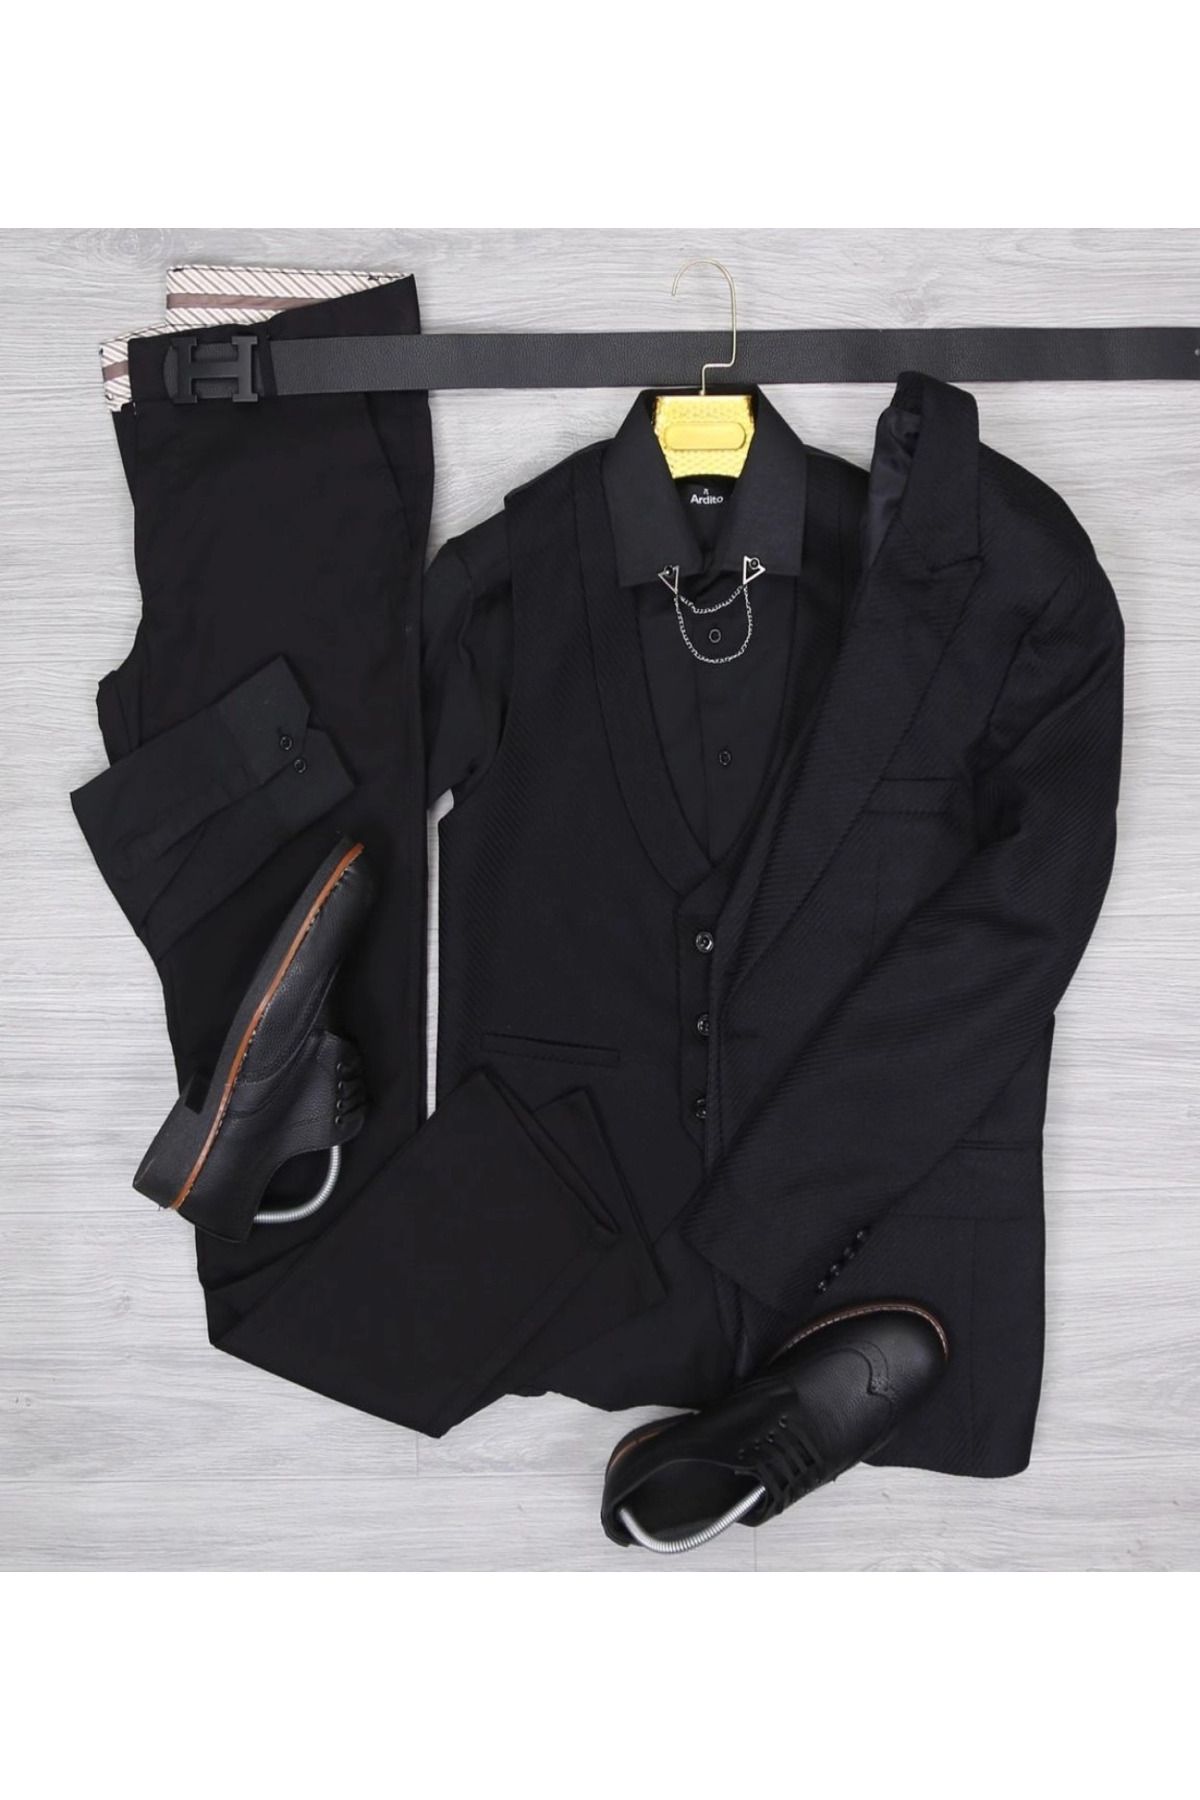 Afrodit Siyah Takım Elbise Özel Kombin